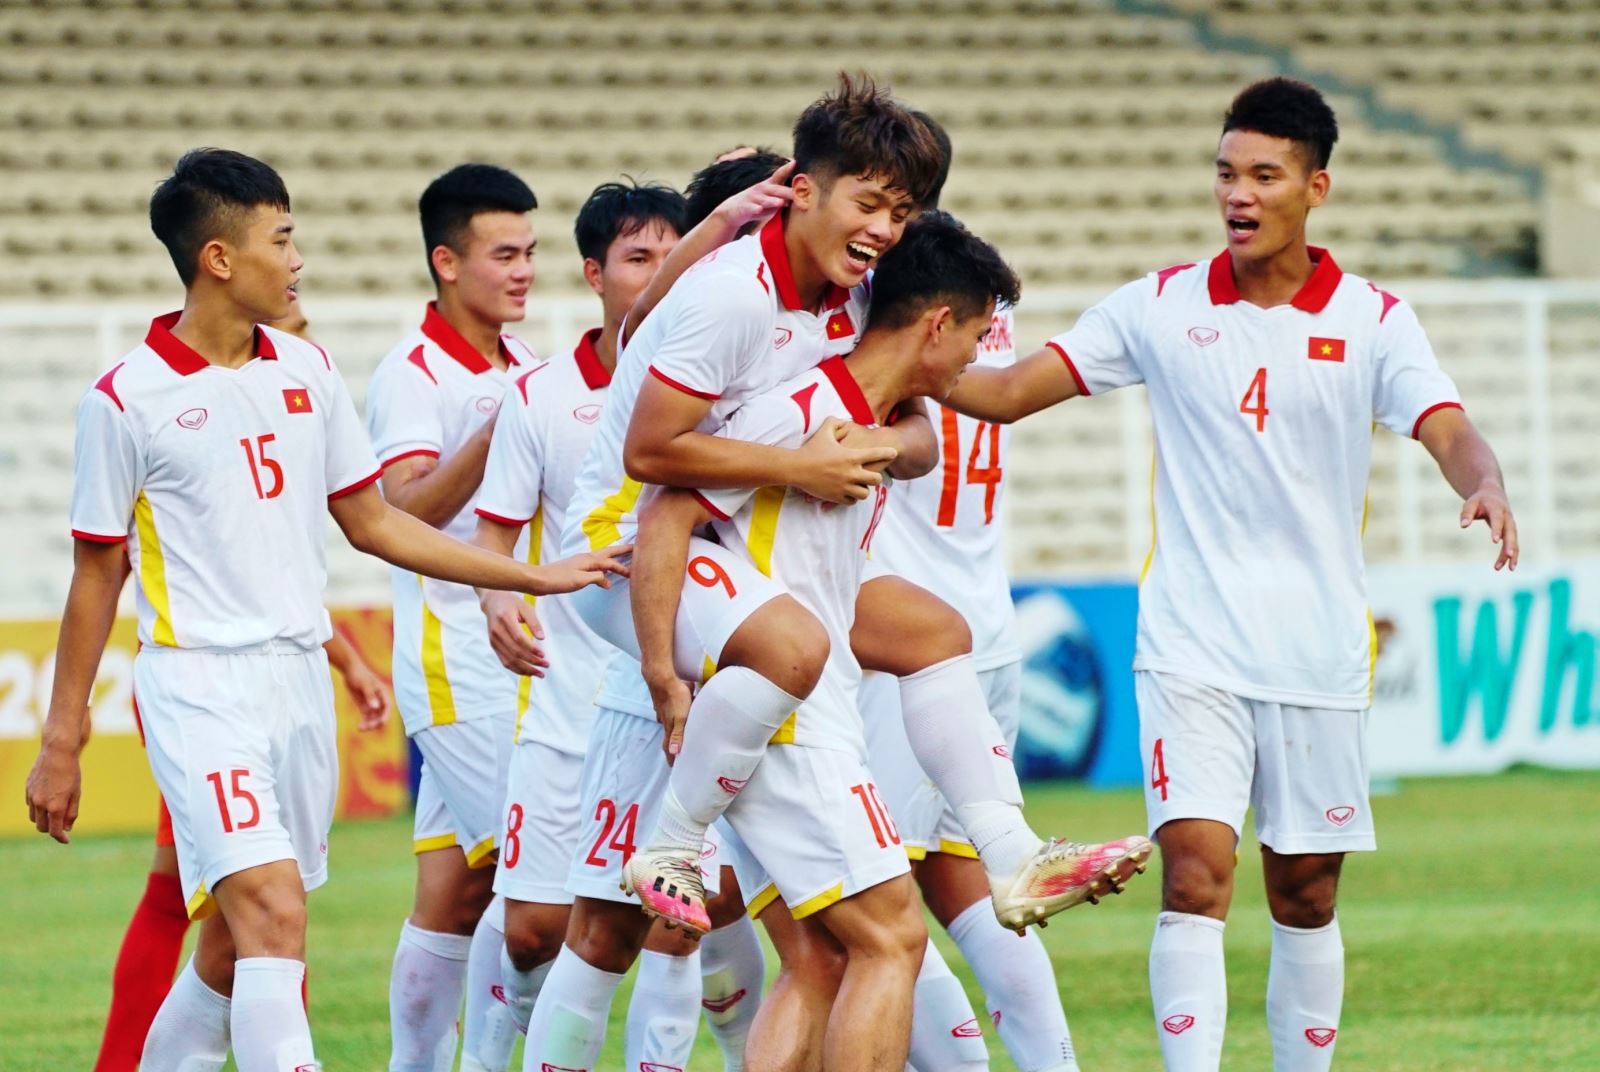 U19 Thái Lan: Đội tuyển U19 Thái Lan luôn được biết đến là đối thủ đáng gờm của các đội tuyển khác tại khu vực Đông Nam Á. Sự nhanh nhẹn, kỹ thuật và tính đồng đội của các cầu thủ trẻ Thái Lan luôn là niềm tự hào và hy vọng cho người hâm mộ bóng đá. Hãy xem hình ảnh của họ để cảm nhận sự tinh tế, tài năng của một đội bóng đá đích thực.